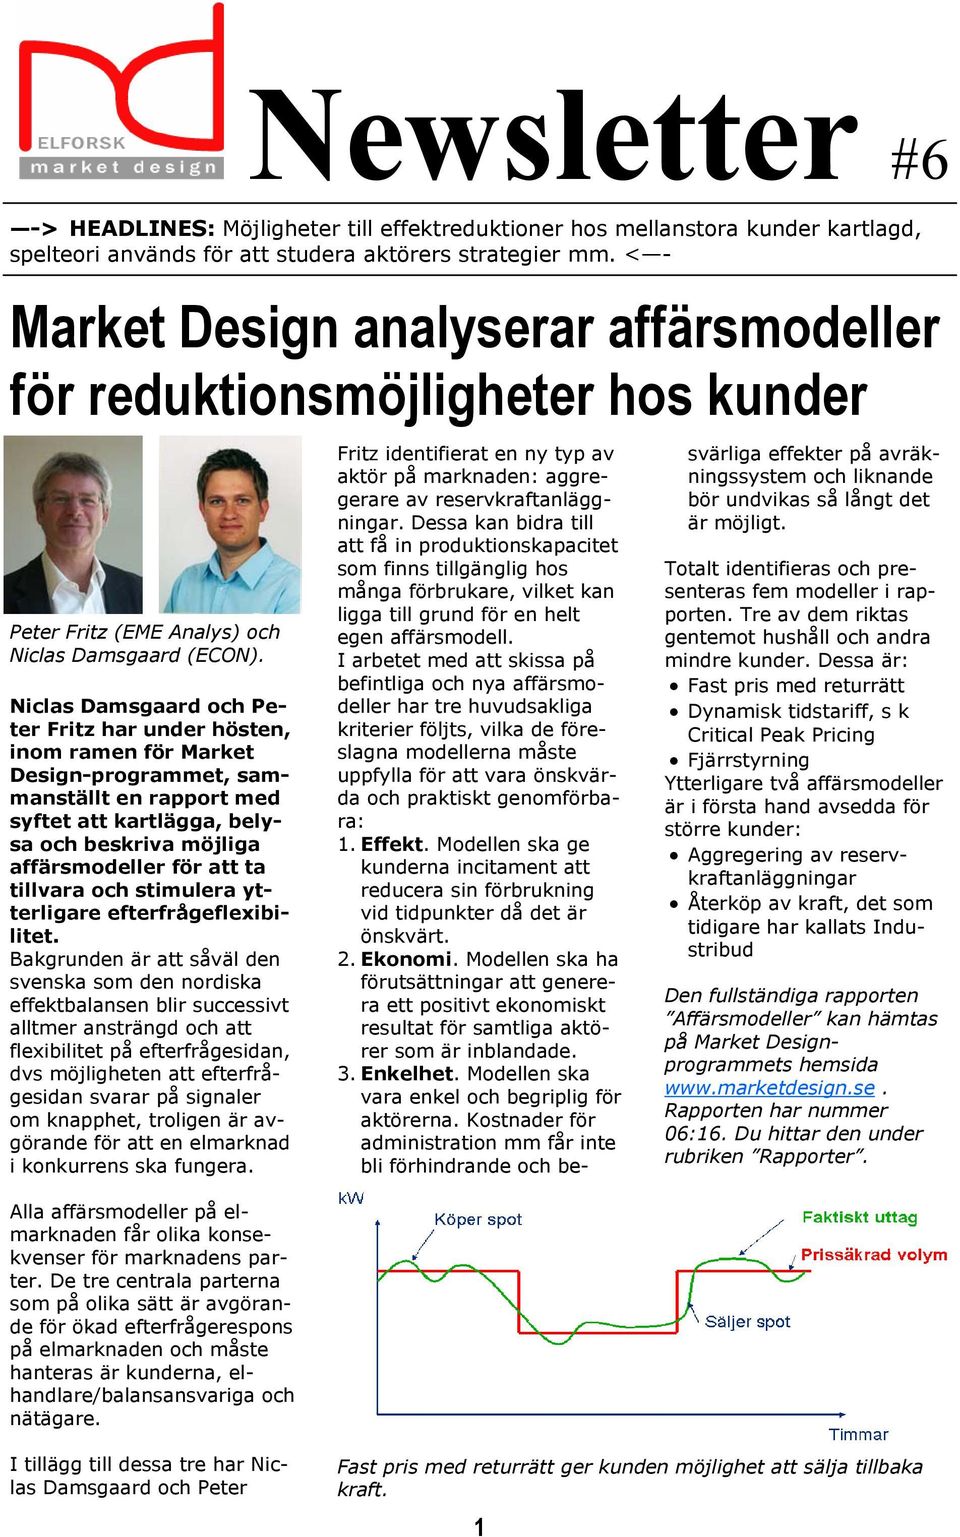 Niclas Damsgaard och Peter Fritz har under hösten, inom ramen för Market Design-programmet, sammanställt en rapport med syftet att kartlägga, belysa och beskriva möjliga affärsmodeller för att ta